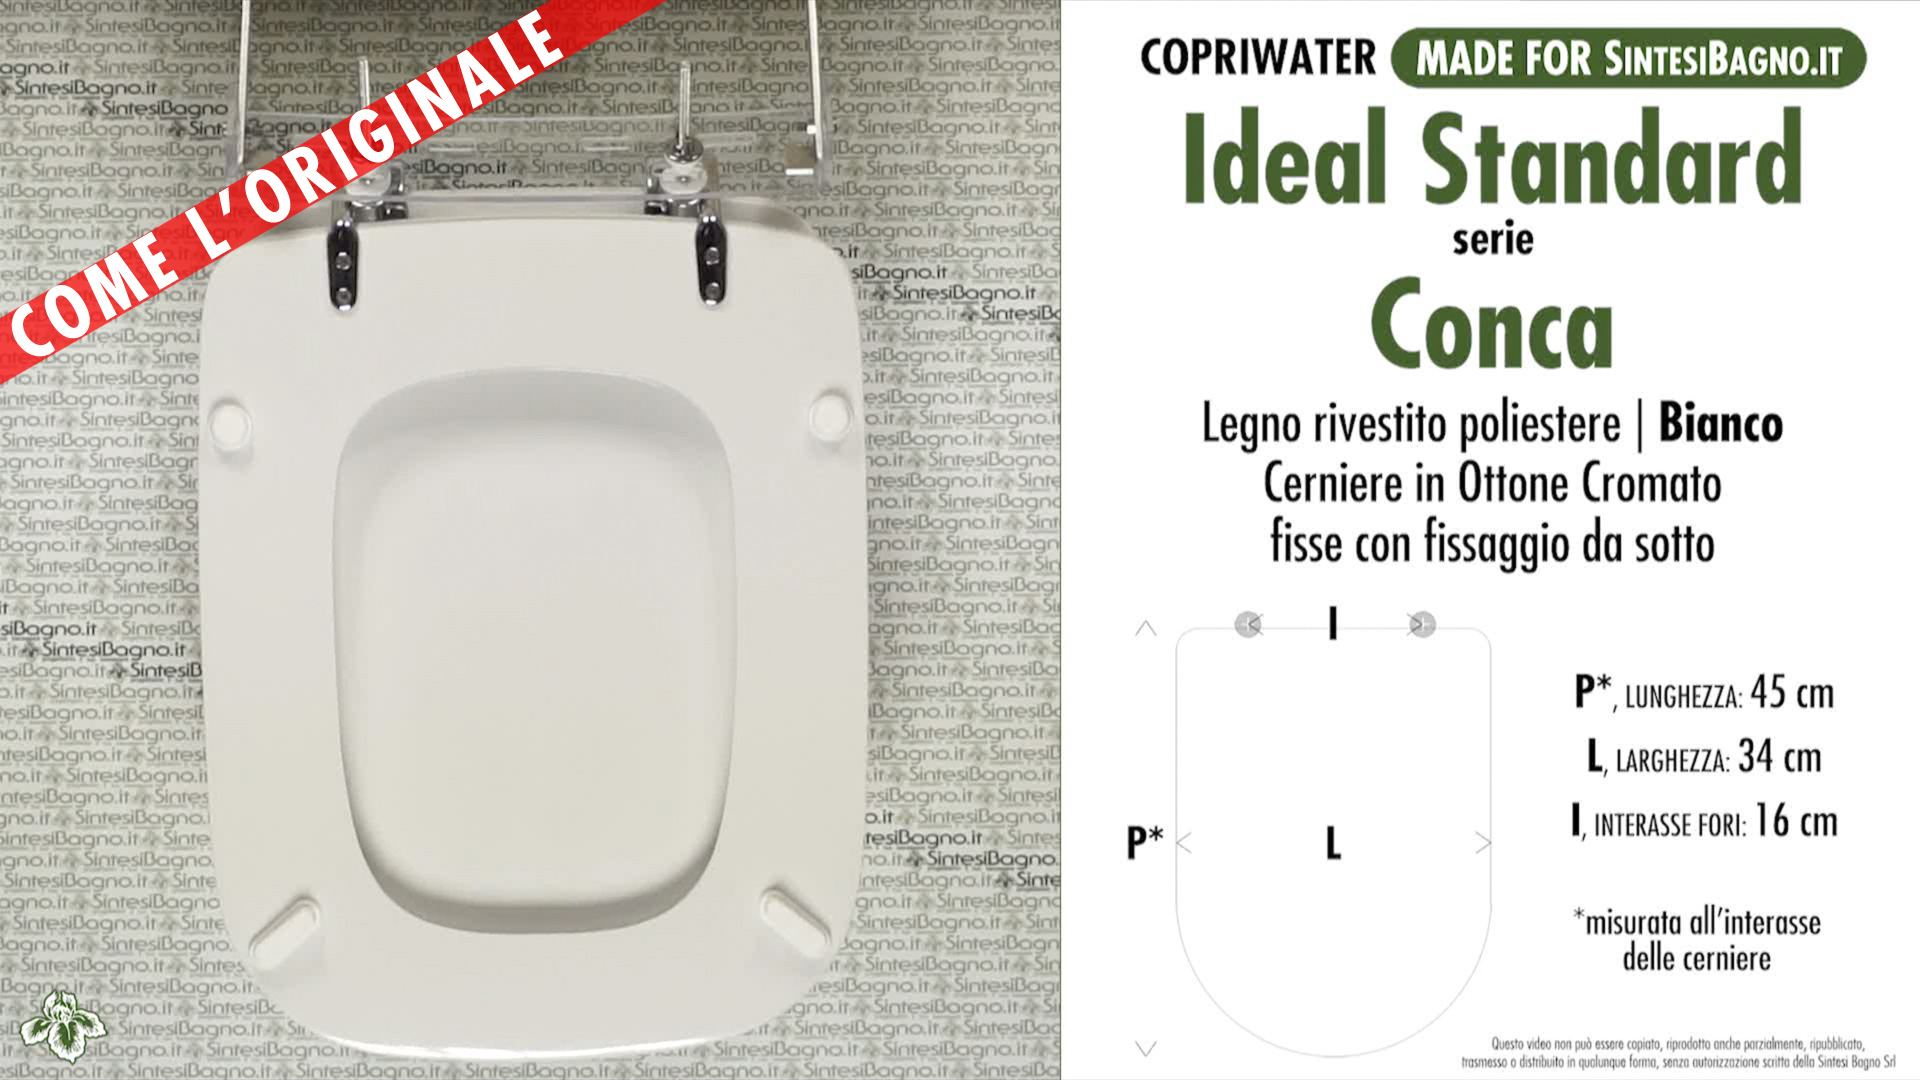 sedile copriwater ideal standard conca asse tavoletta copri wc vaso legno